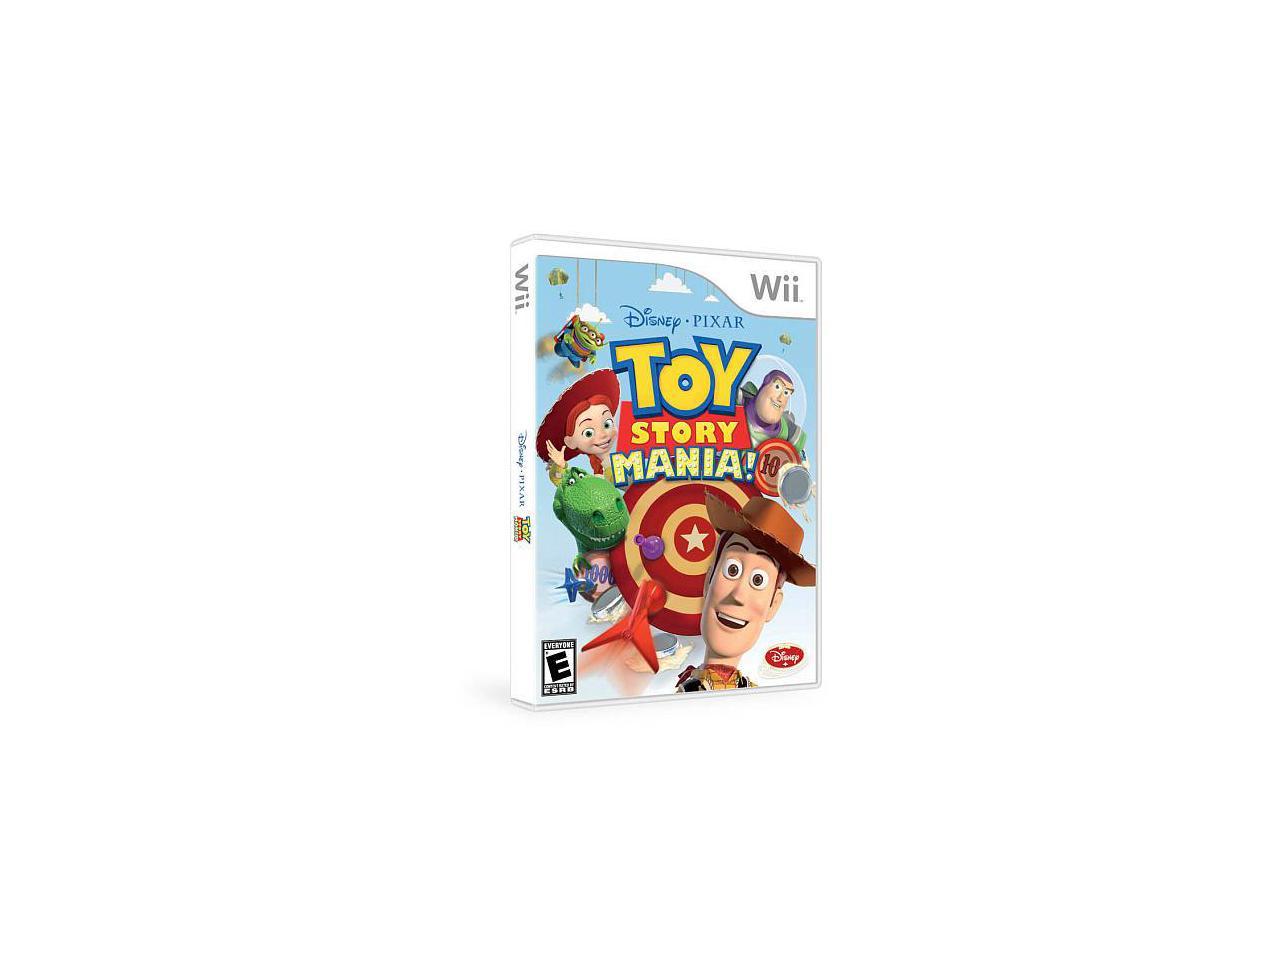 Disney Pixar's Toy Story Mania for Nintendo Wii - Newegg.com